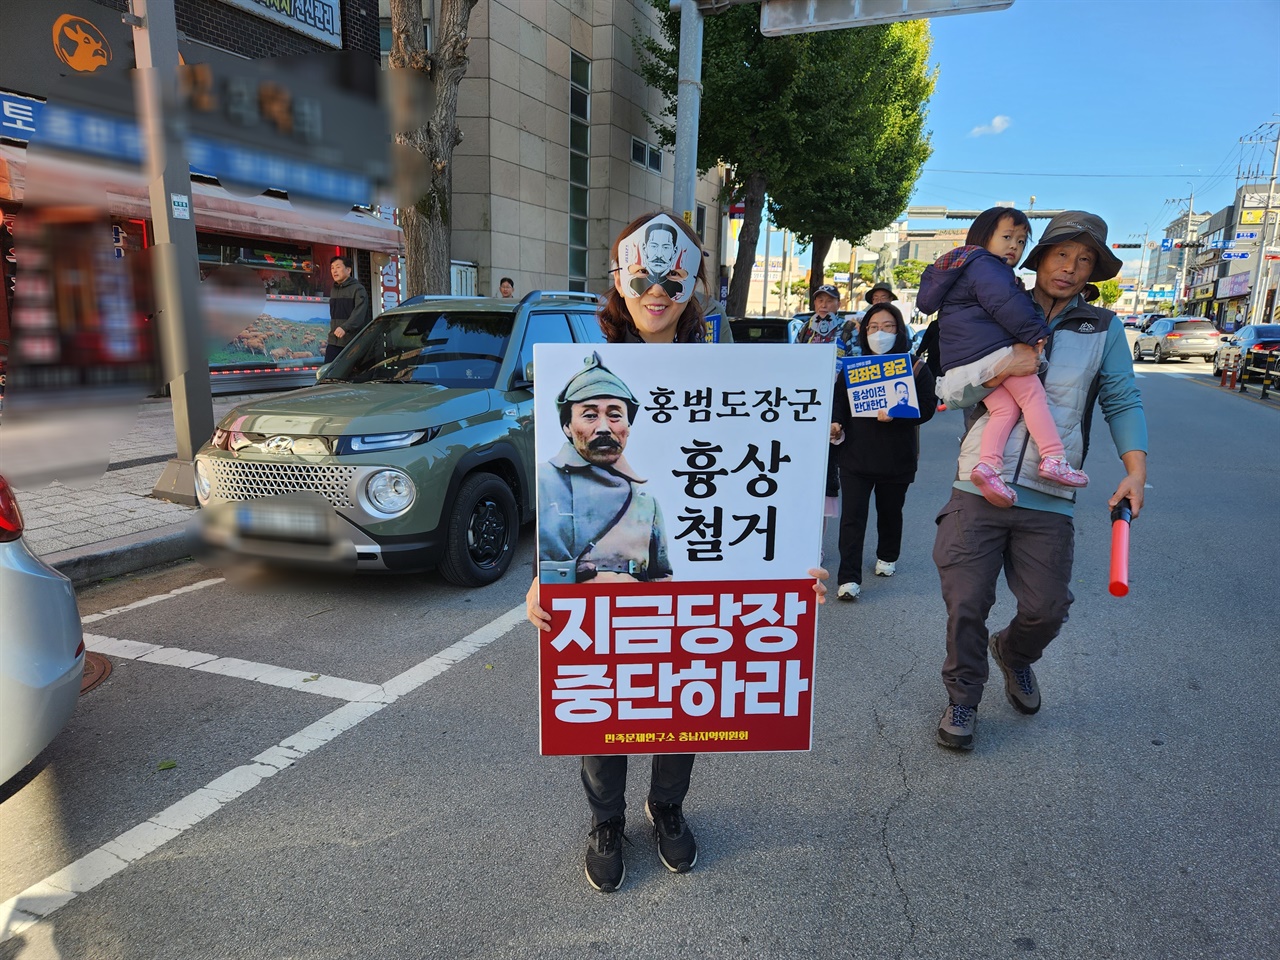 김좌진 장군의 가면을 쓴 시민이 '홍범도 장군 흉상 철거, 지금당장 중단하라'고 적힌 피켓을 들고 있다.  